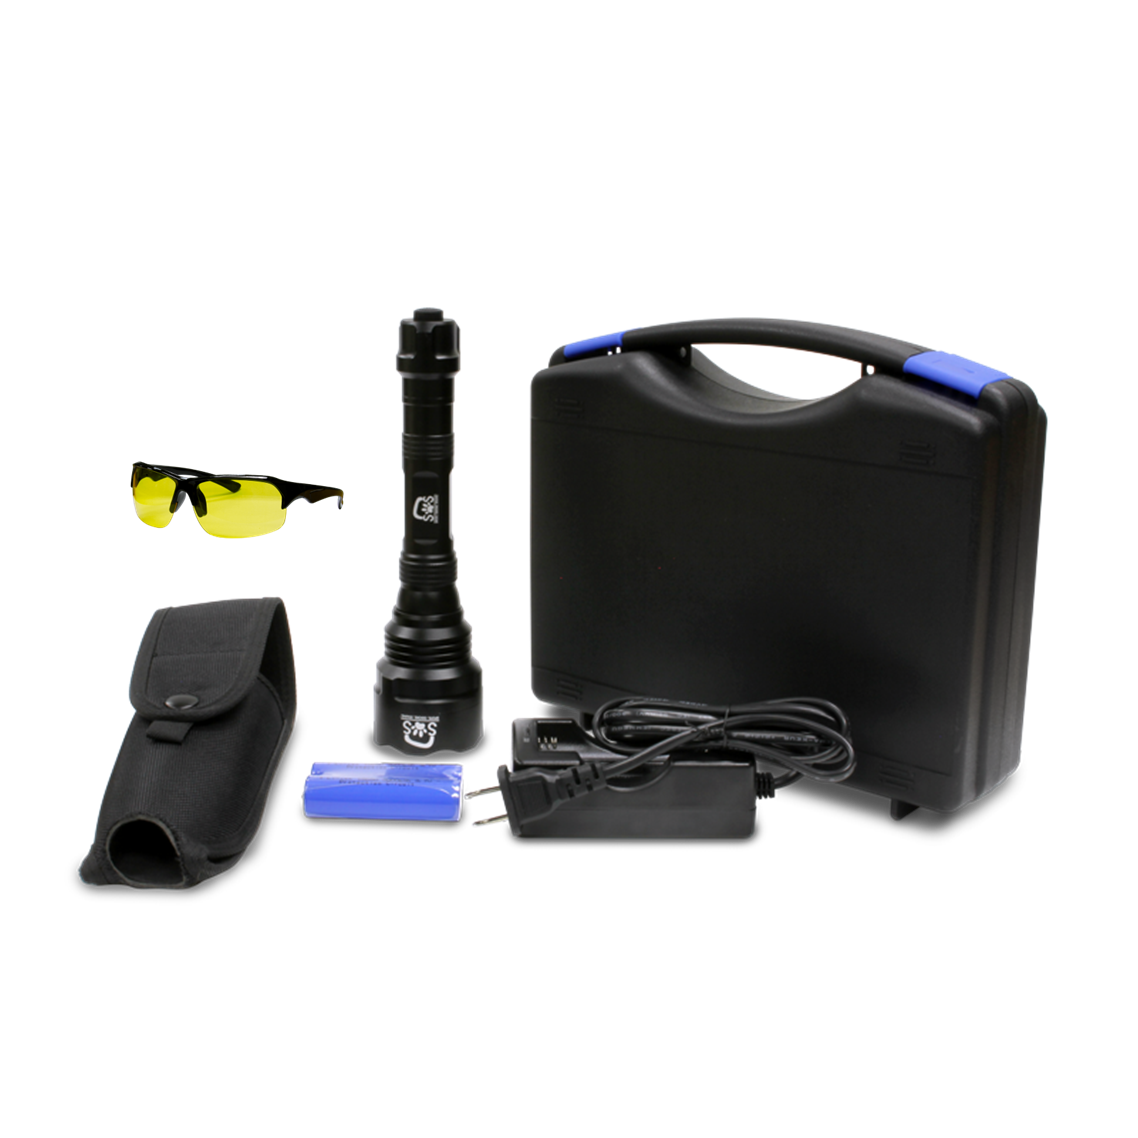 SOS UV Light Kit